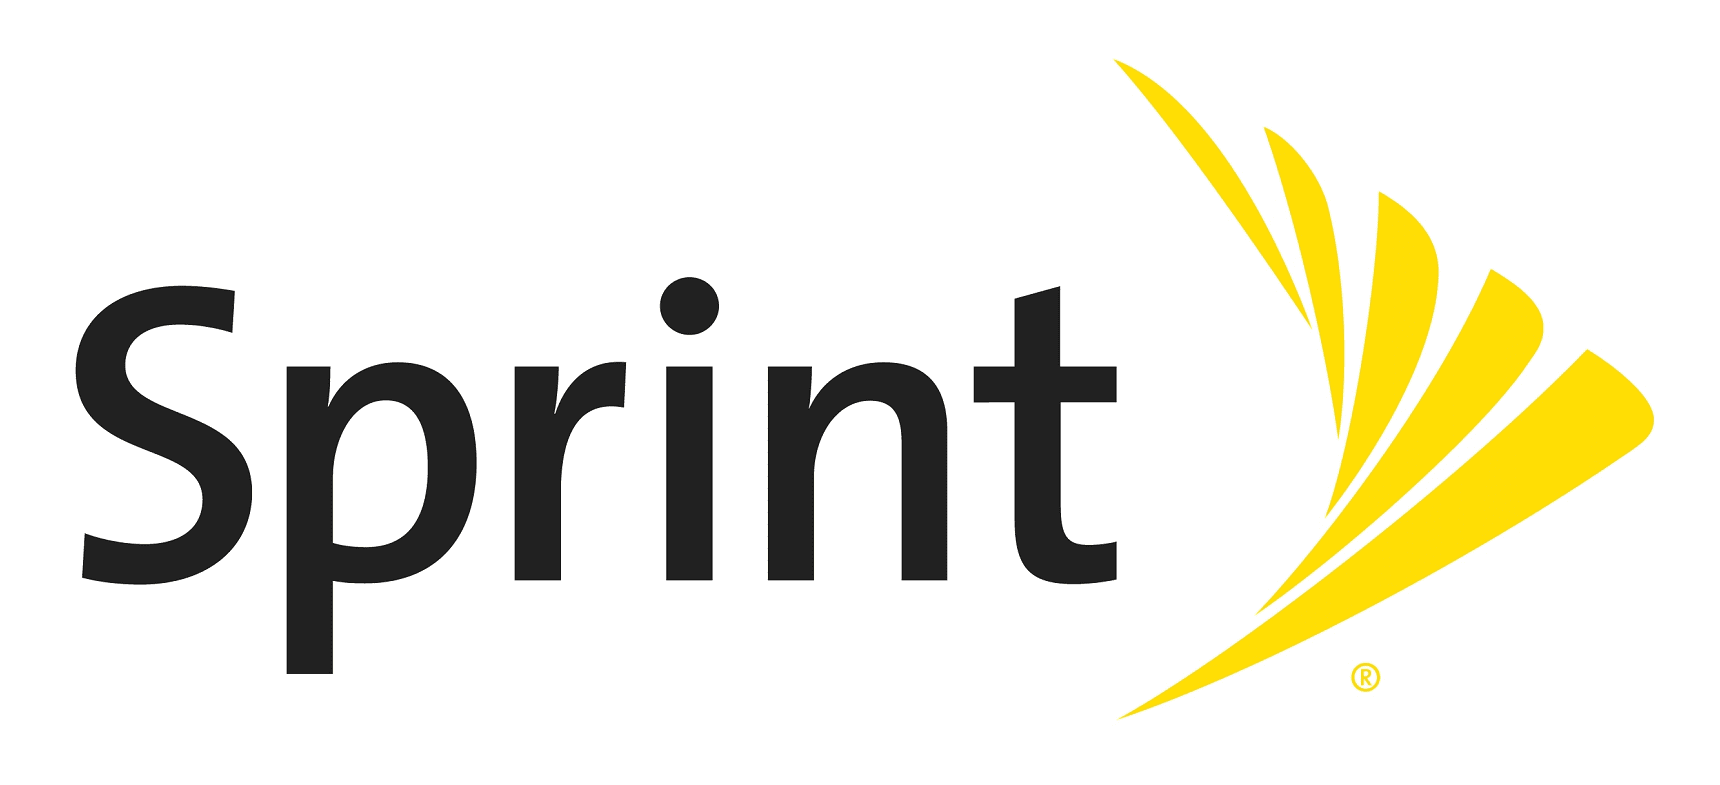 Sprint 5G wird in New York getestet